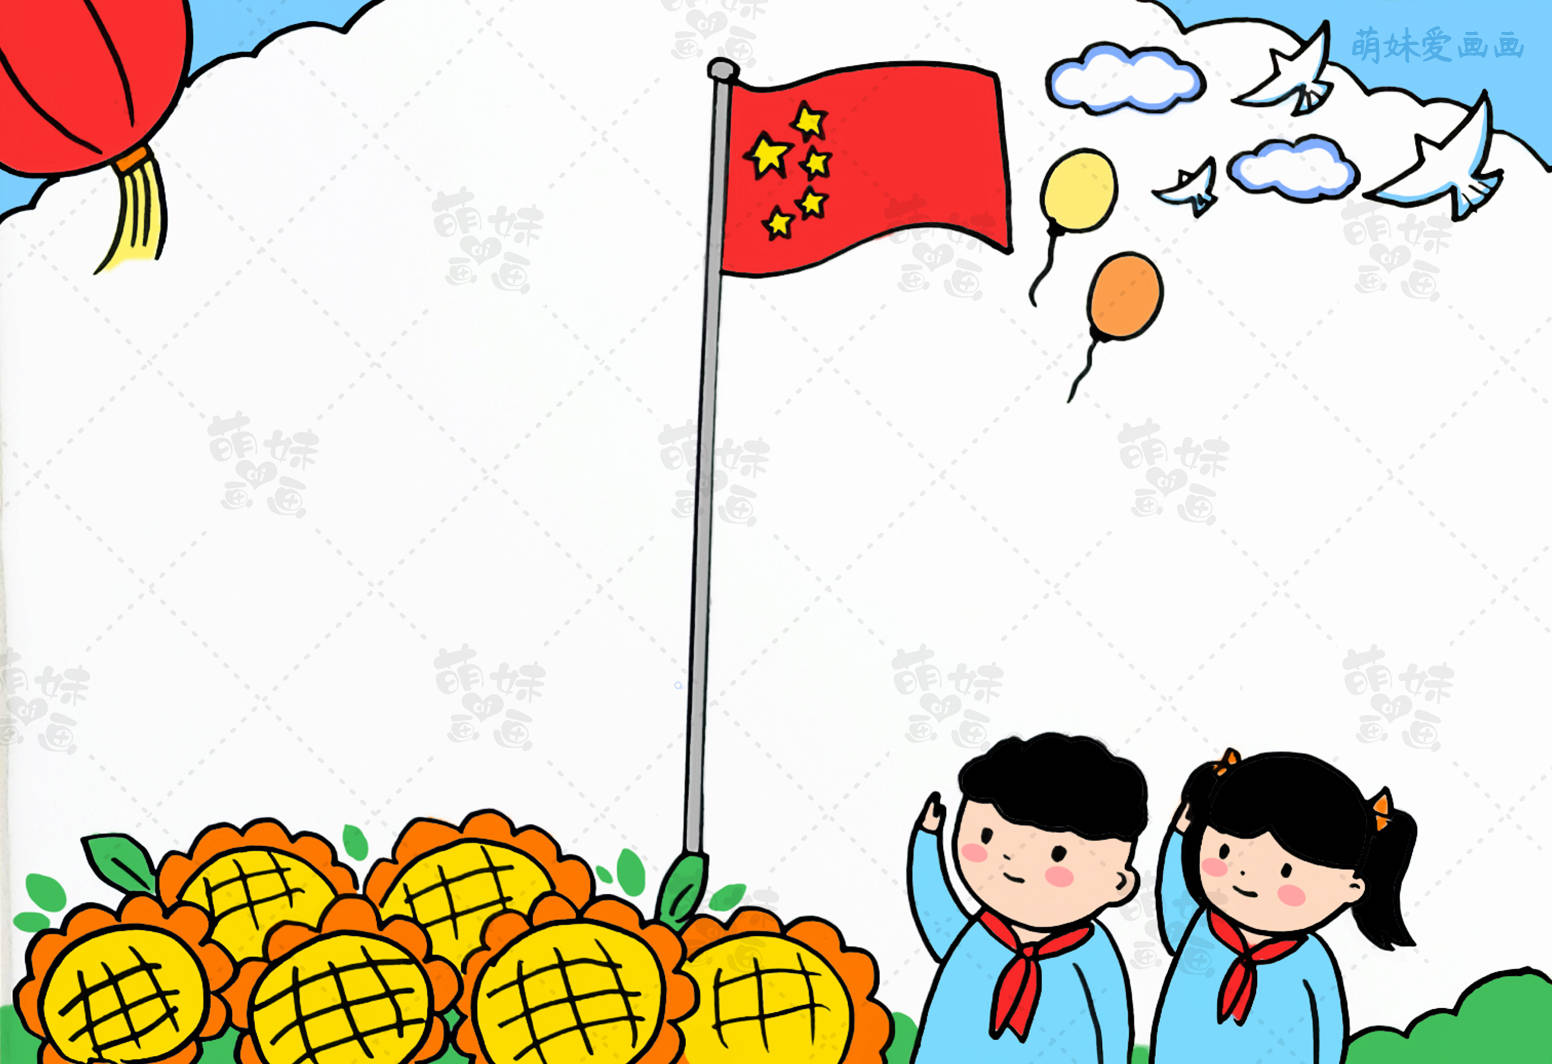 又简单又好看的国庆节画怎么画 国庆节简单的儿童绘画作品 - 水彩迷